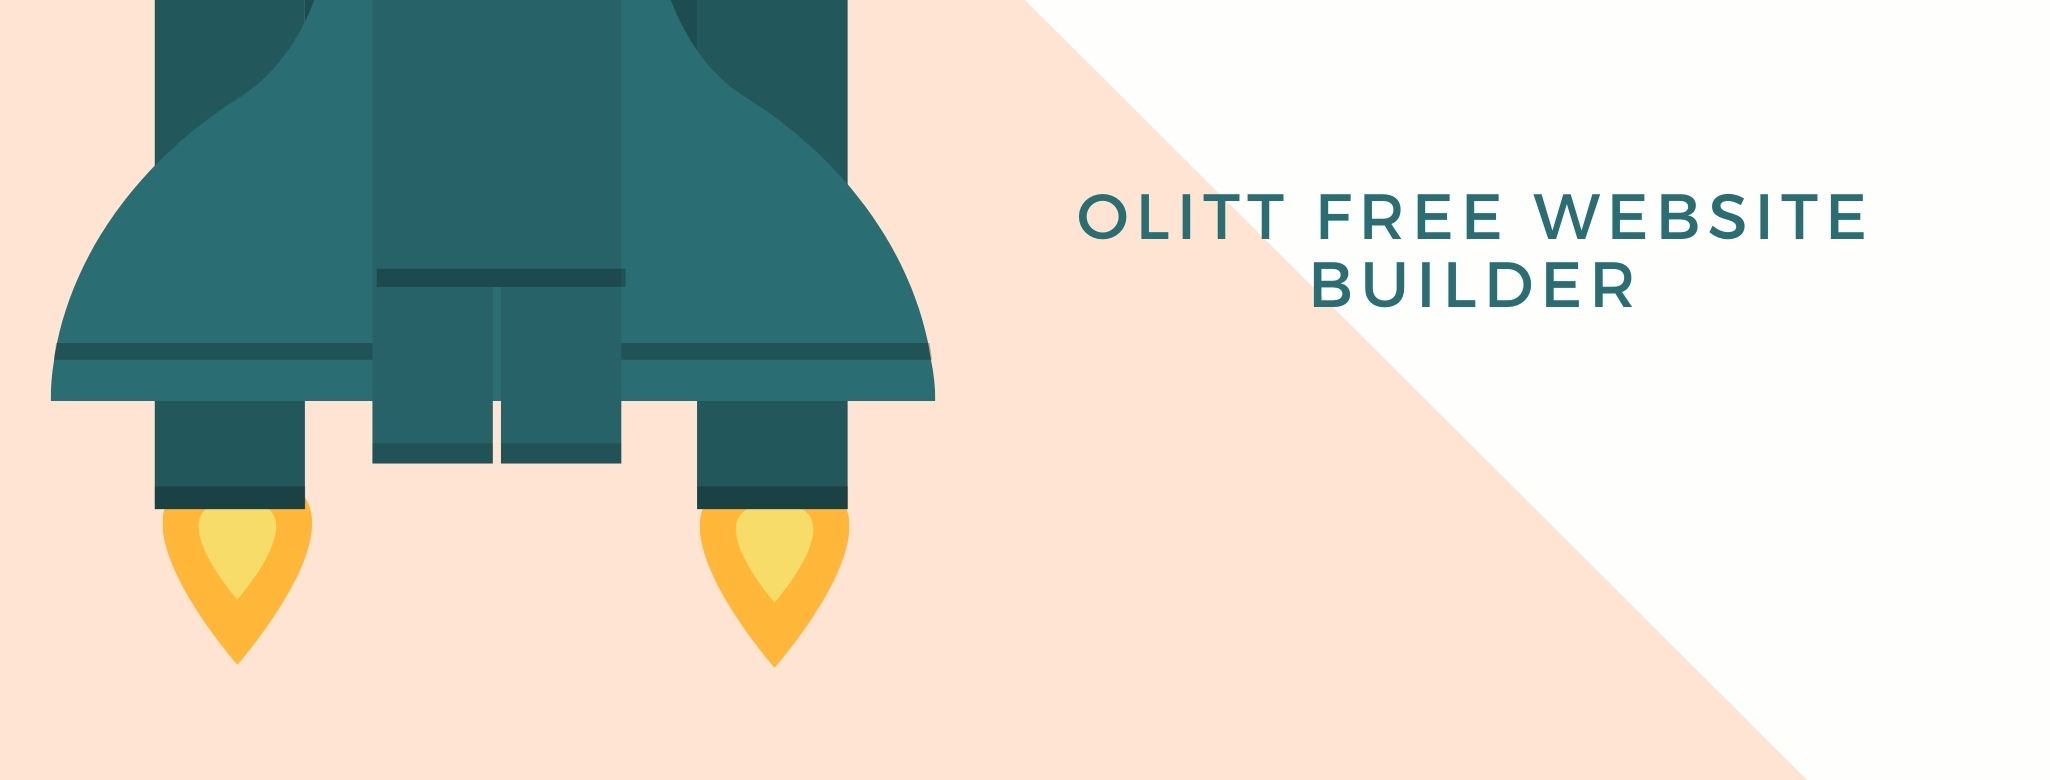 Olitt Free Website Builder